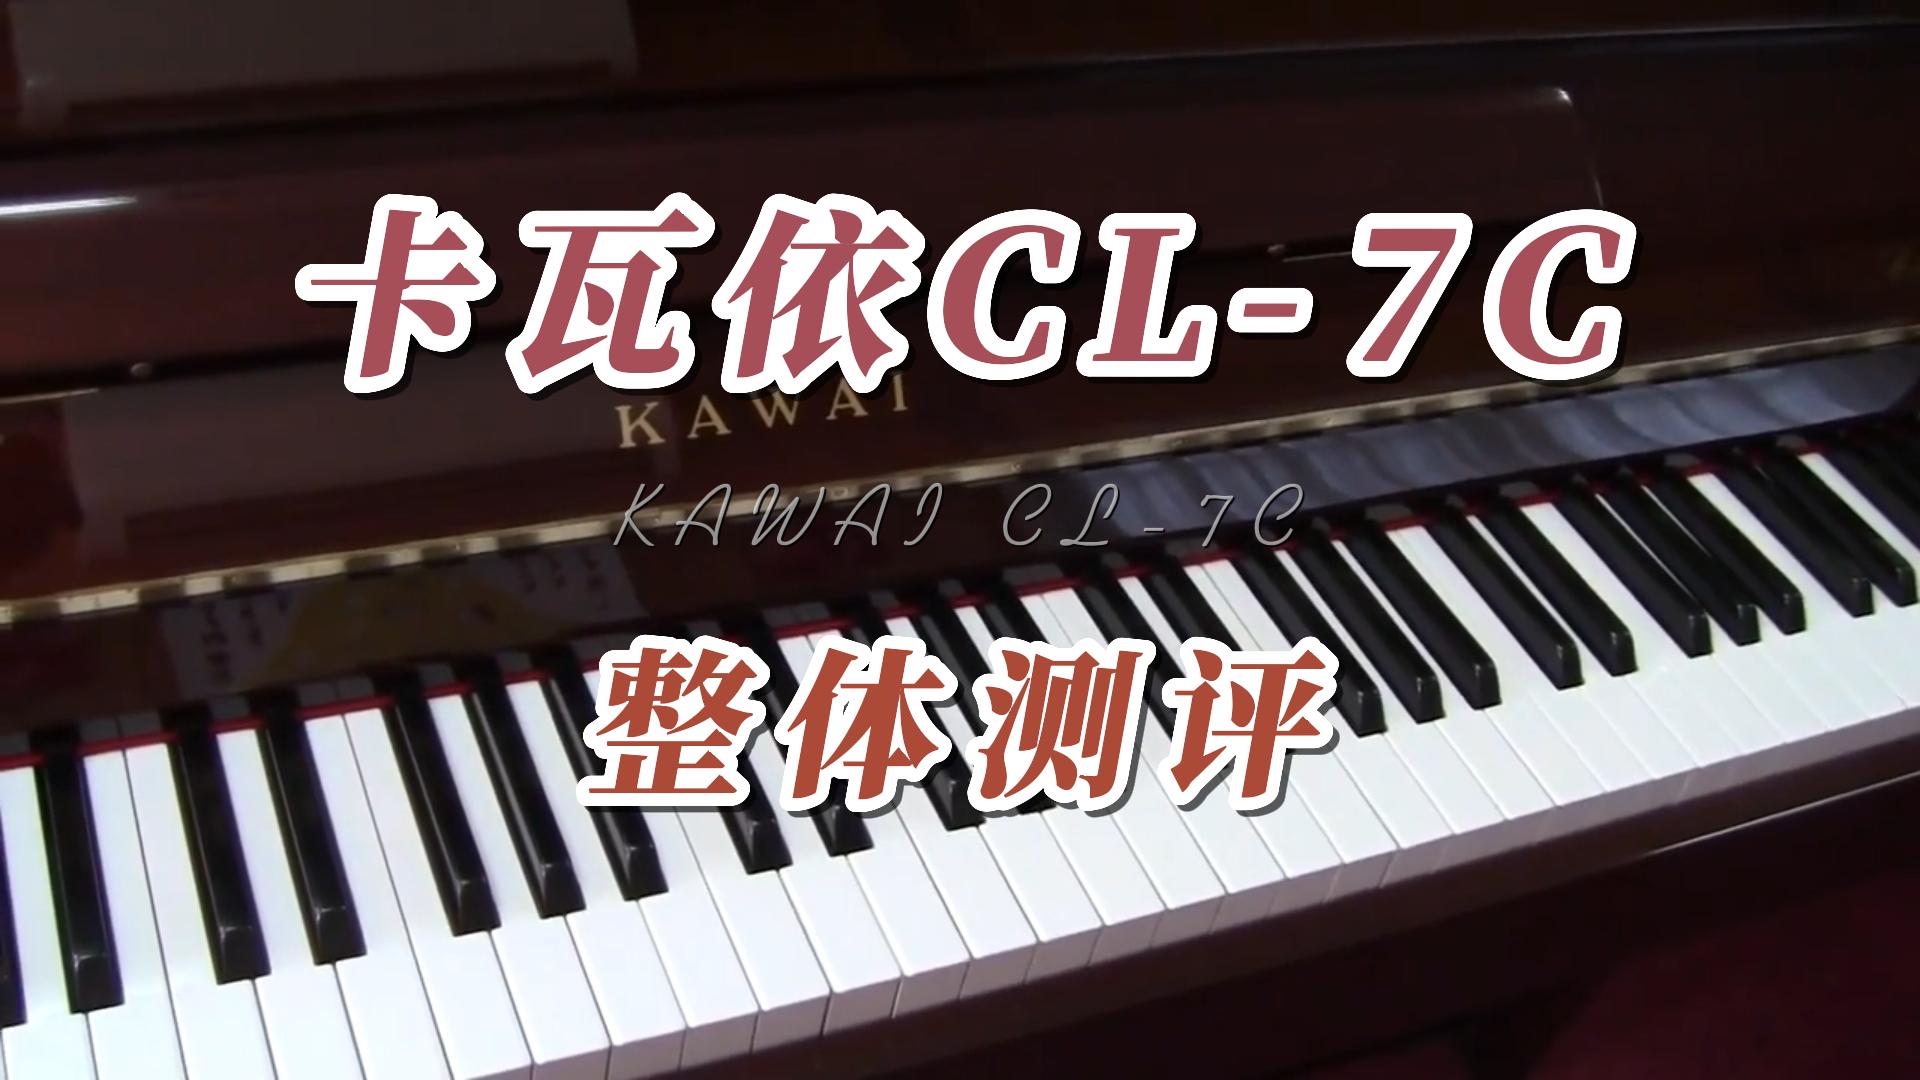 KAWAI 卡瓦依CL-7C立式钢琴专业级-柏通琴行整理